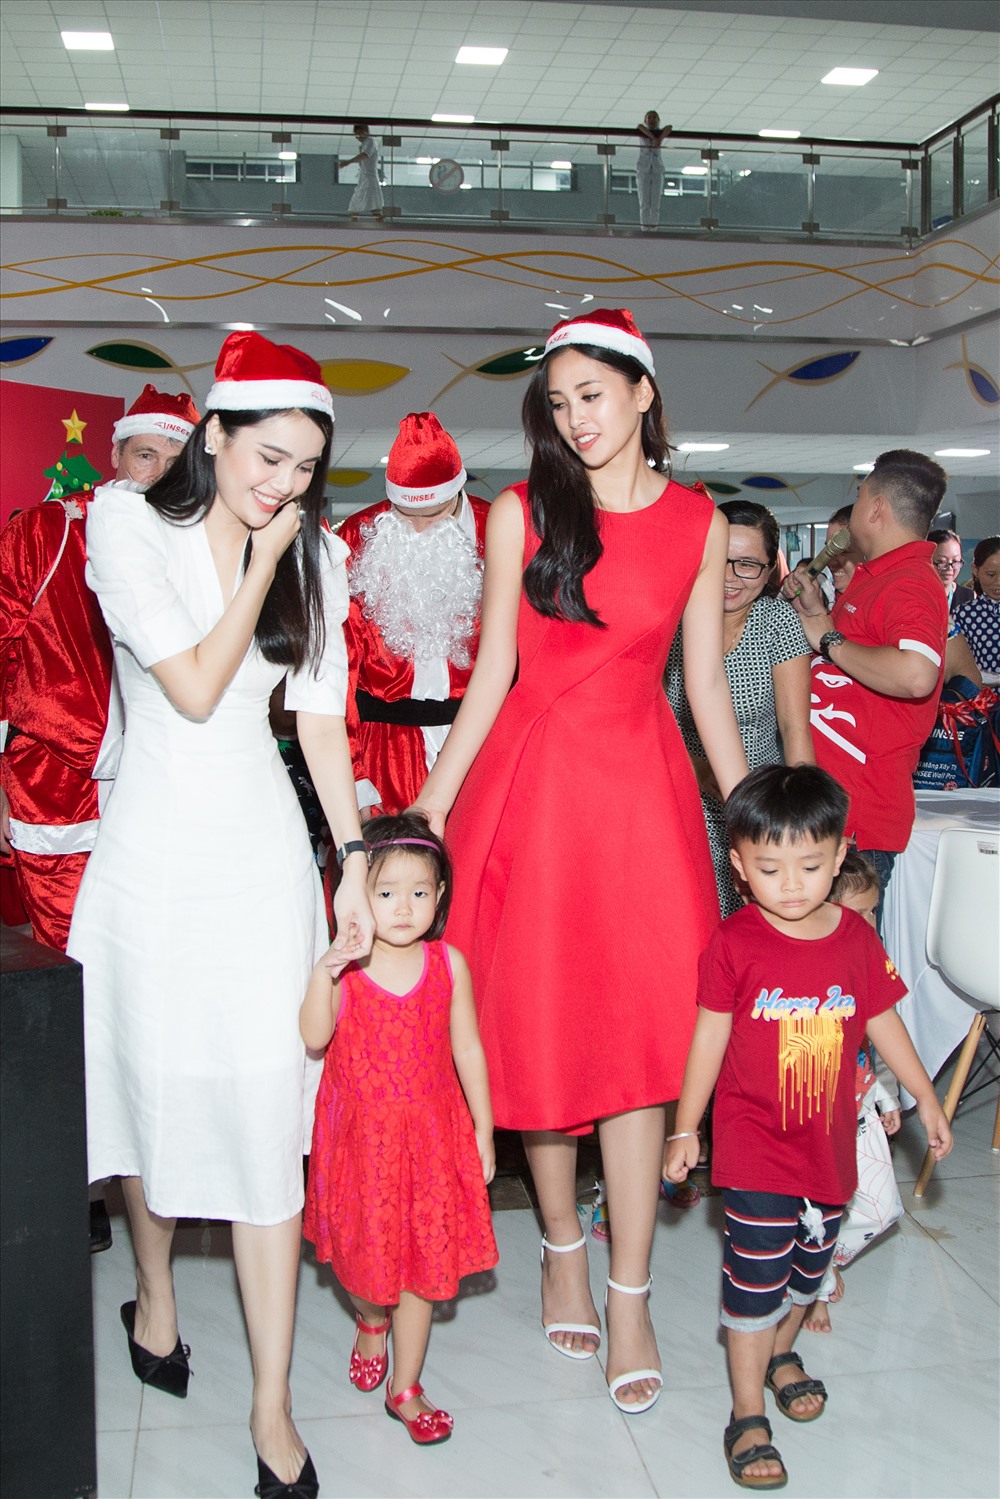 rước thềm Giáng Sinh, Hoa hậu Tiểu Vy và Á hậu Thúy An, Á hậu Diệu Thuỳ cùng tham gia hoạt động cộng đồng, vui chơi và tặng quà Giáng sinh cho các trẻ em tại Bệnh viện Nhi đồng và trẻ em có hoàn cảnh khó khăn tại thành phố Hồ Chí Minh.